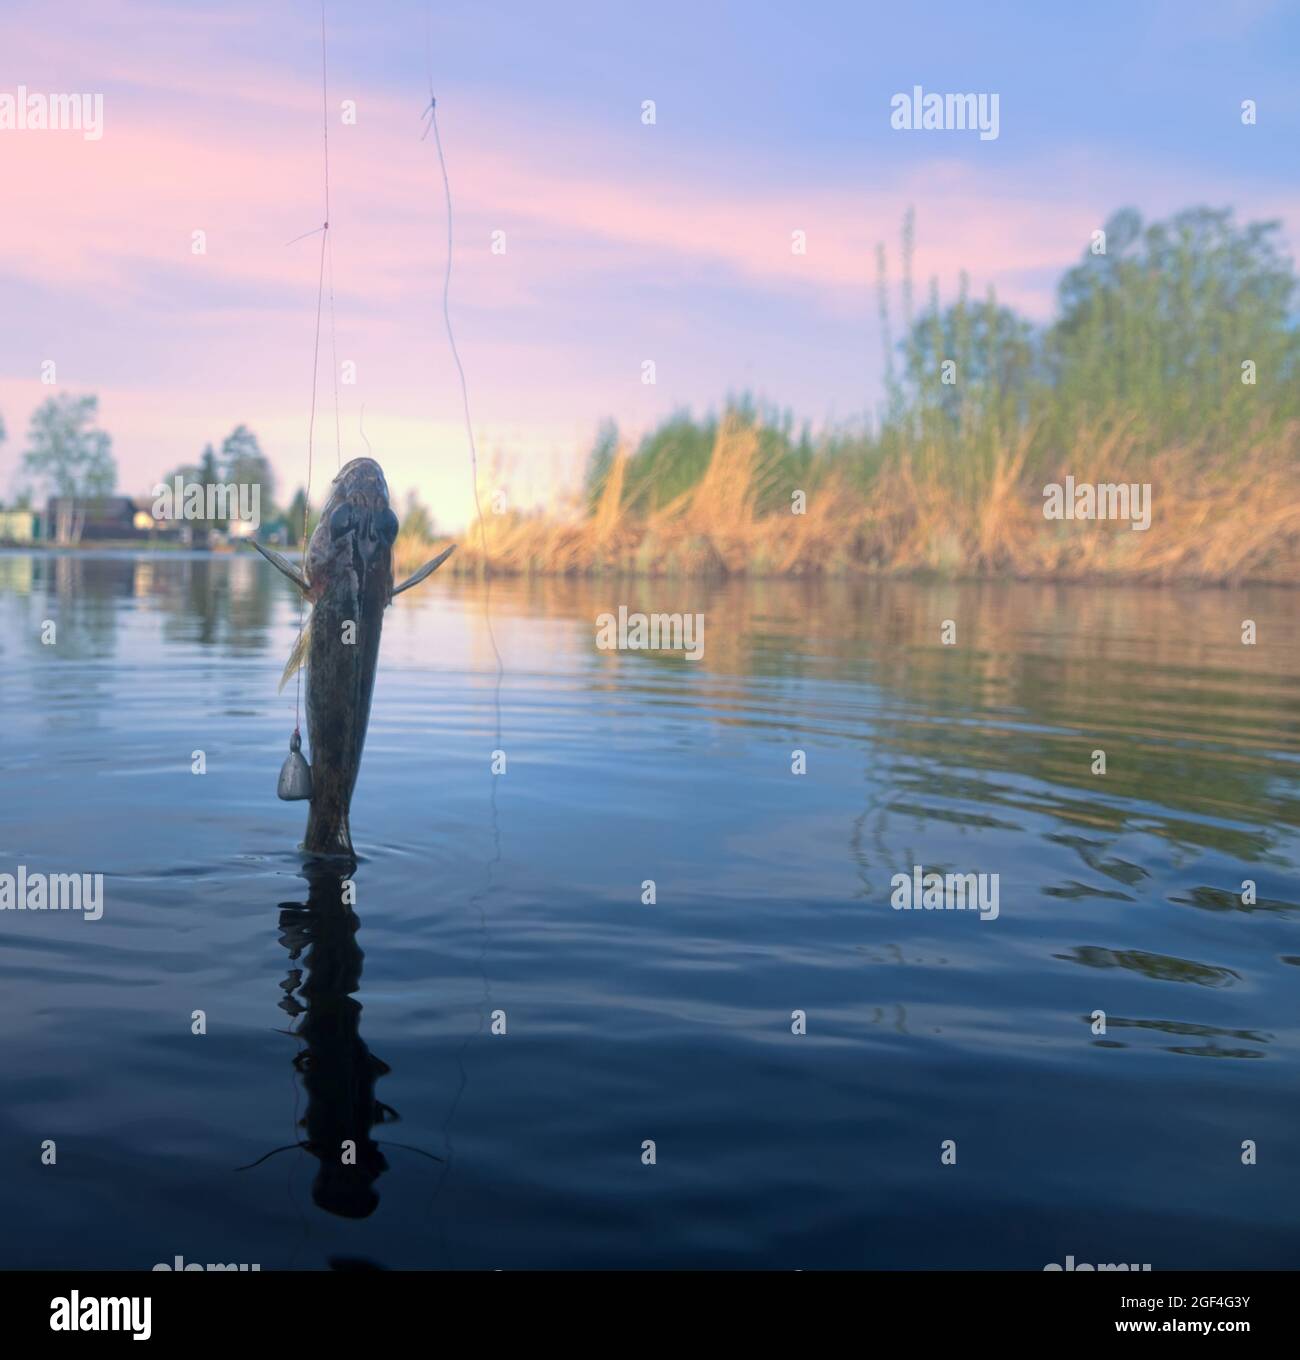 Fischfang mit Angelschnur für die Grundfischerei im Dorf am kleinen nördlichen Fluss im Frühjahr - Sportfischen. Eurasisches Rufffischen. Pho Stockfoto